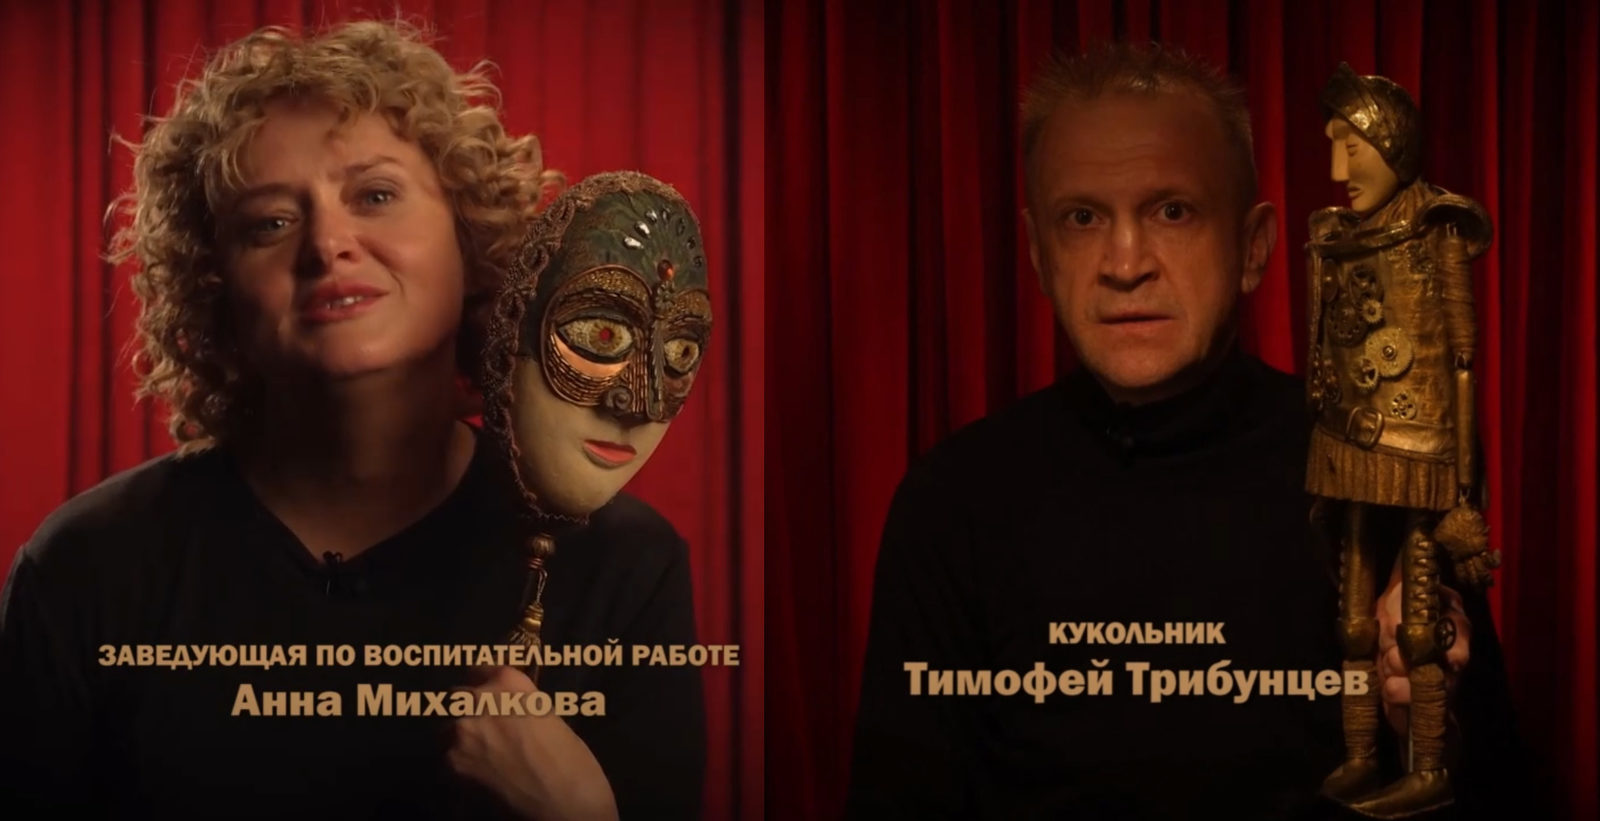 Анна Михалкова и Тимофей Трибунцев окажутся в музыкальной сказке